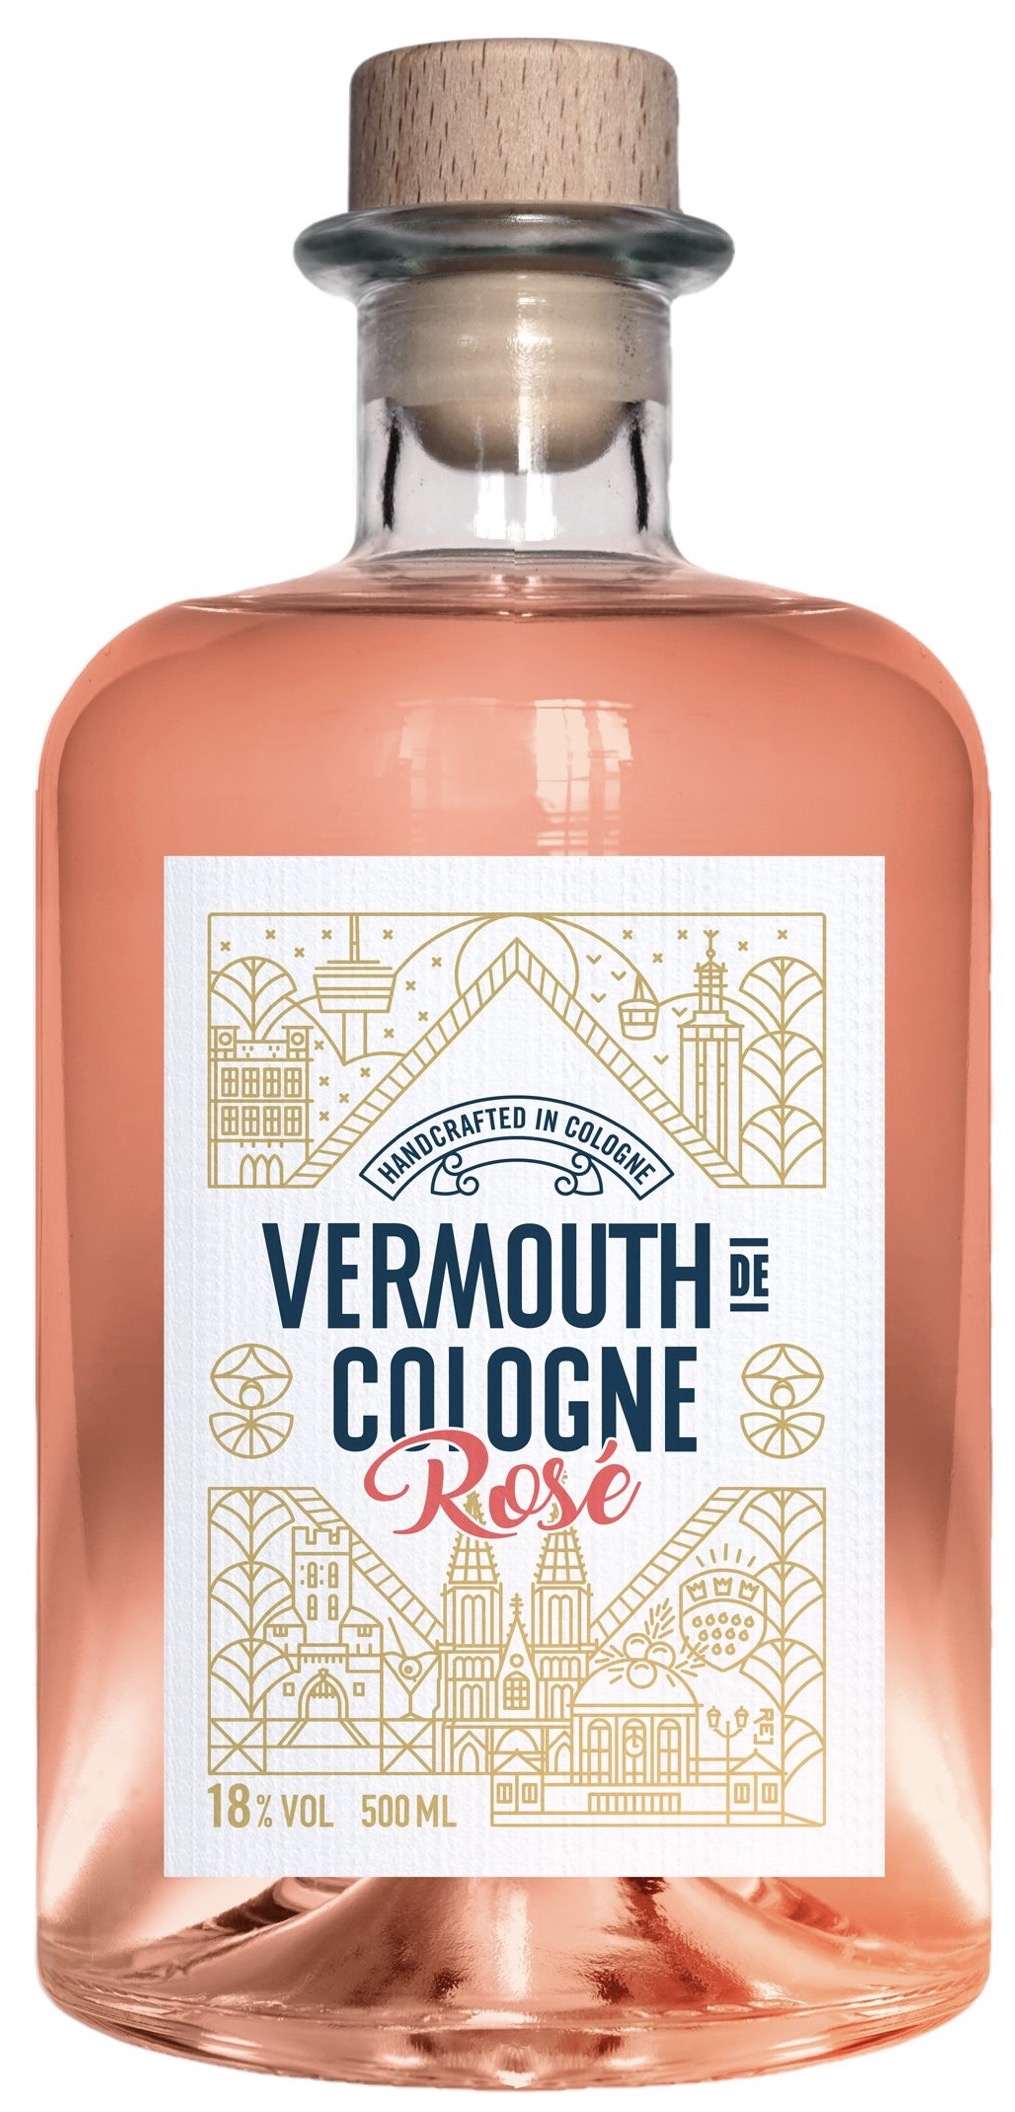 Vermouth de Cologne Rosé 18% vol. 0,5L